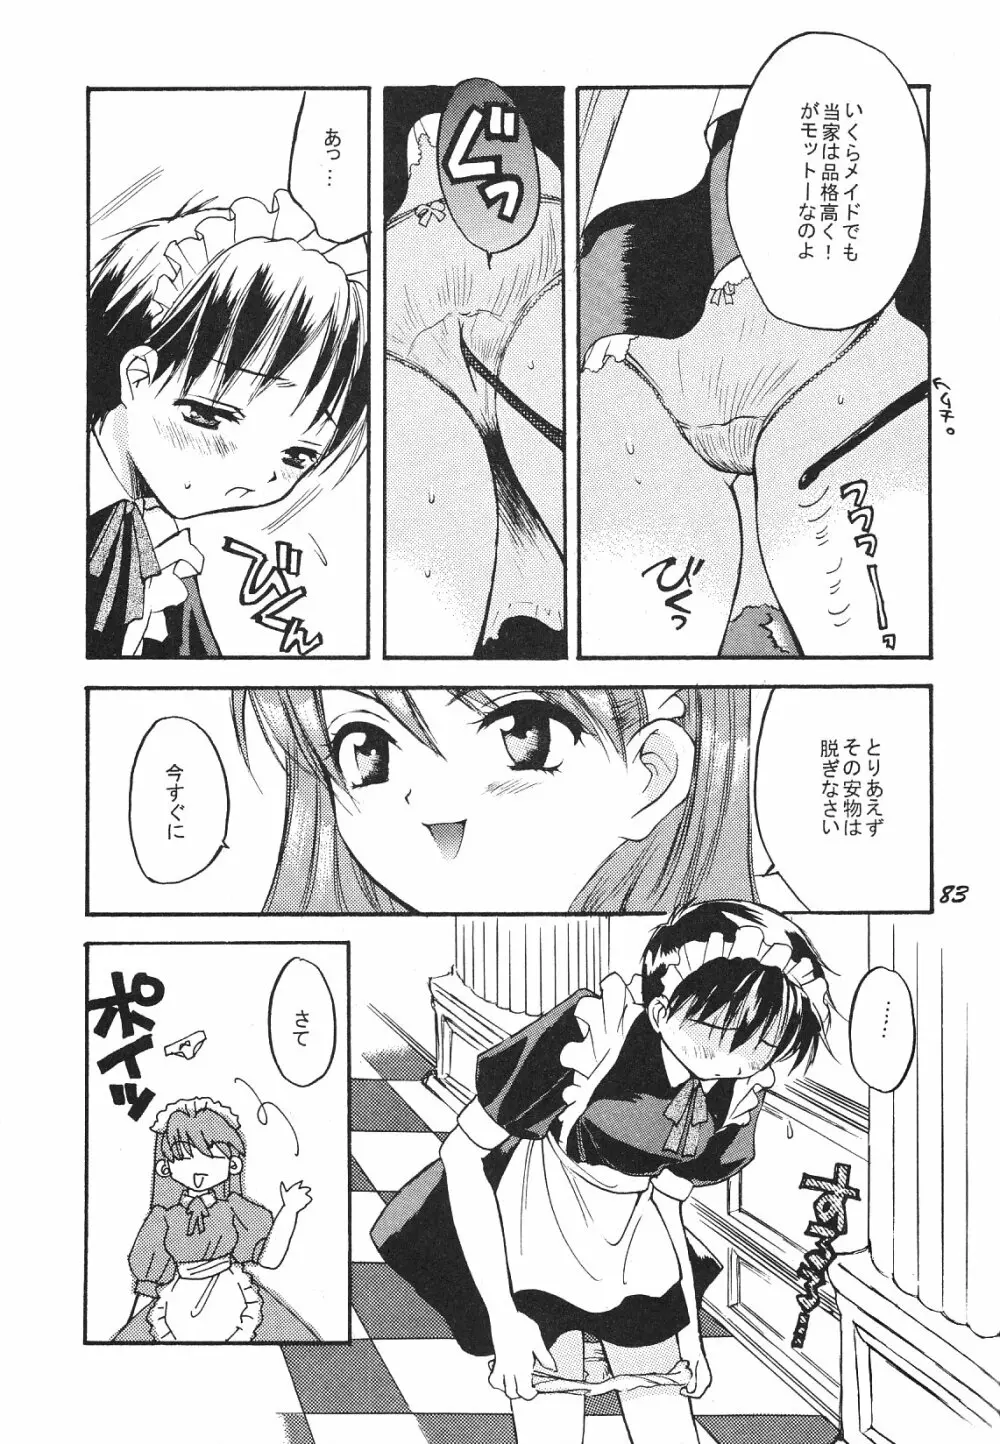 Maniac Juice 女シンジ再録集 '96-'99 - page83